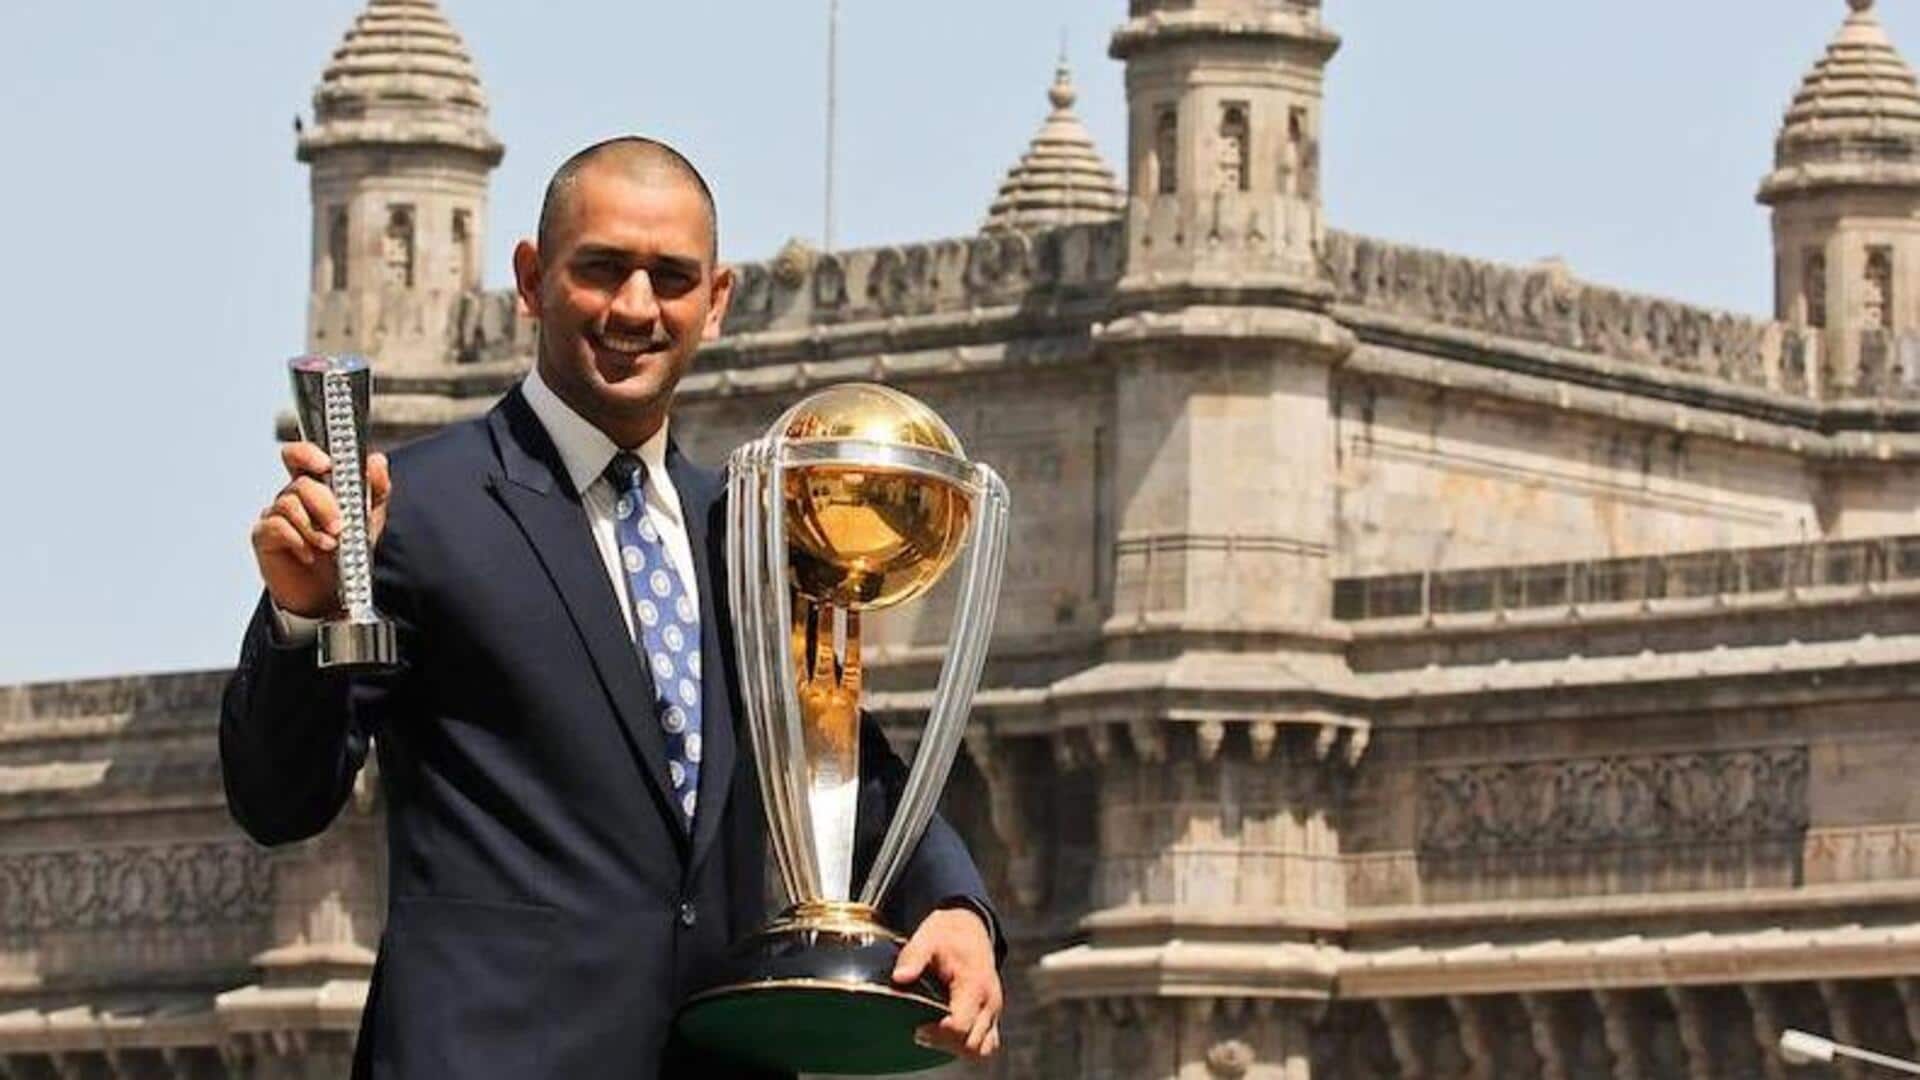 वनडे विश्व कप इतिहास के 5 सबसे सफल कप्तानों के बारे में जानिए, 2 भारतीय शामिल